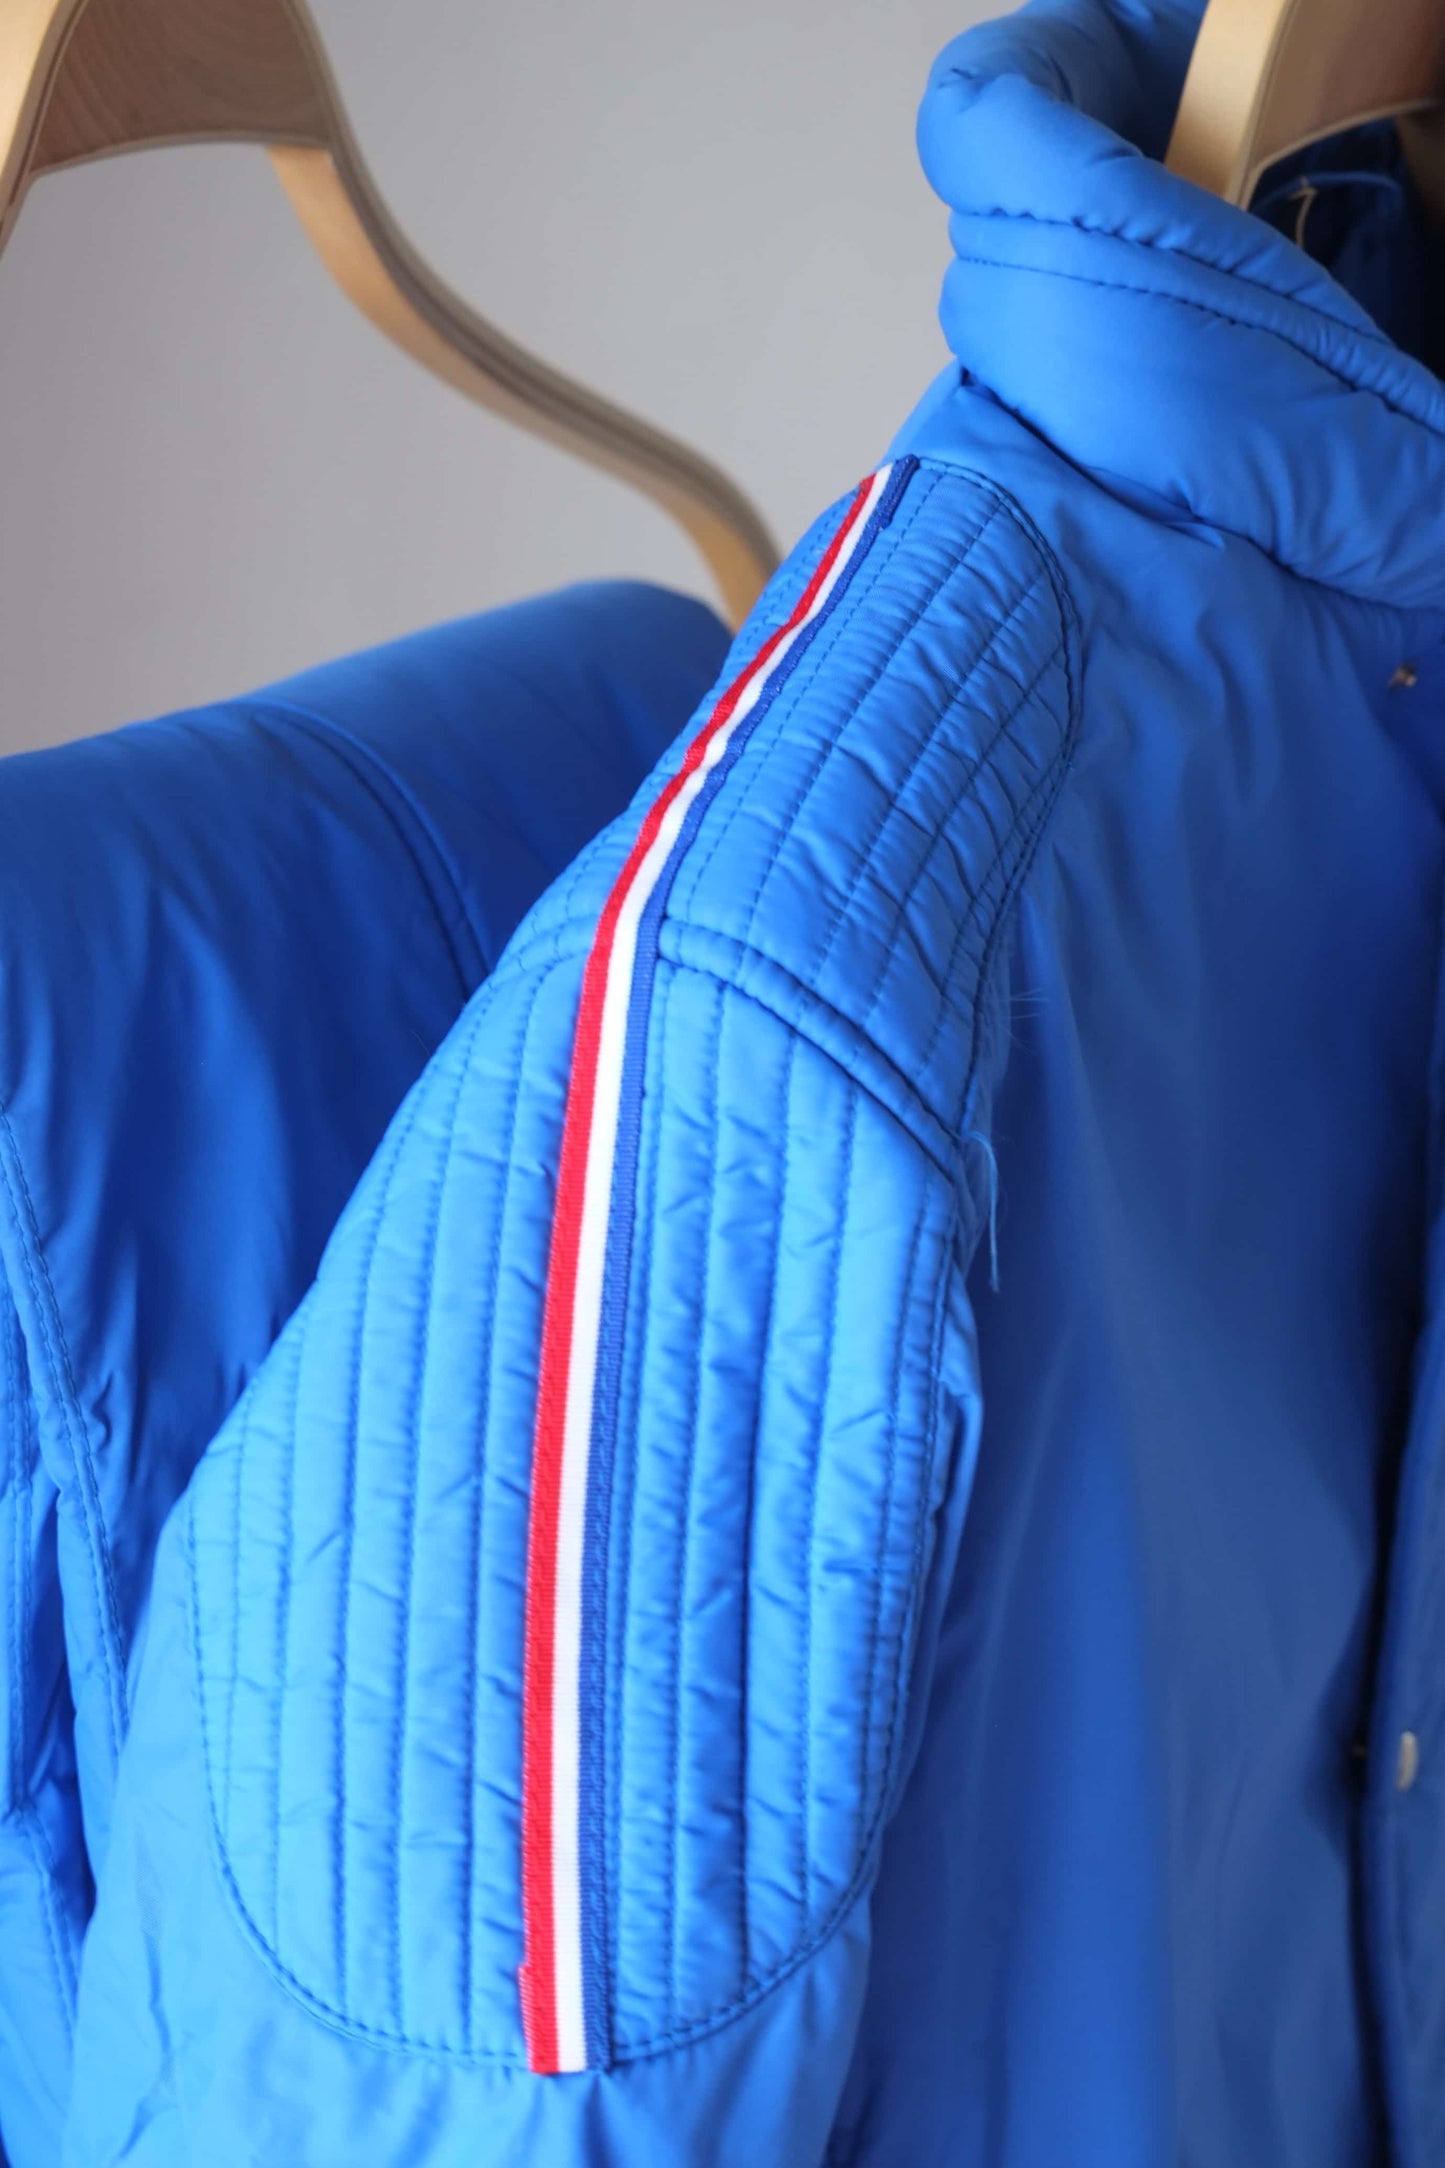 Vintage Men's 70's Ski Suit detail blue